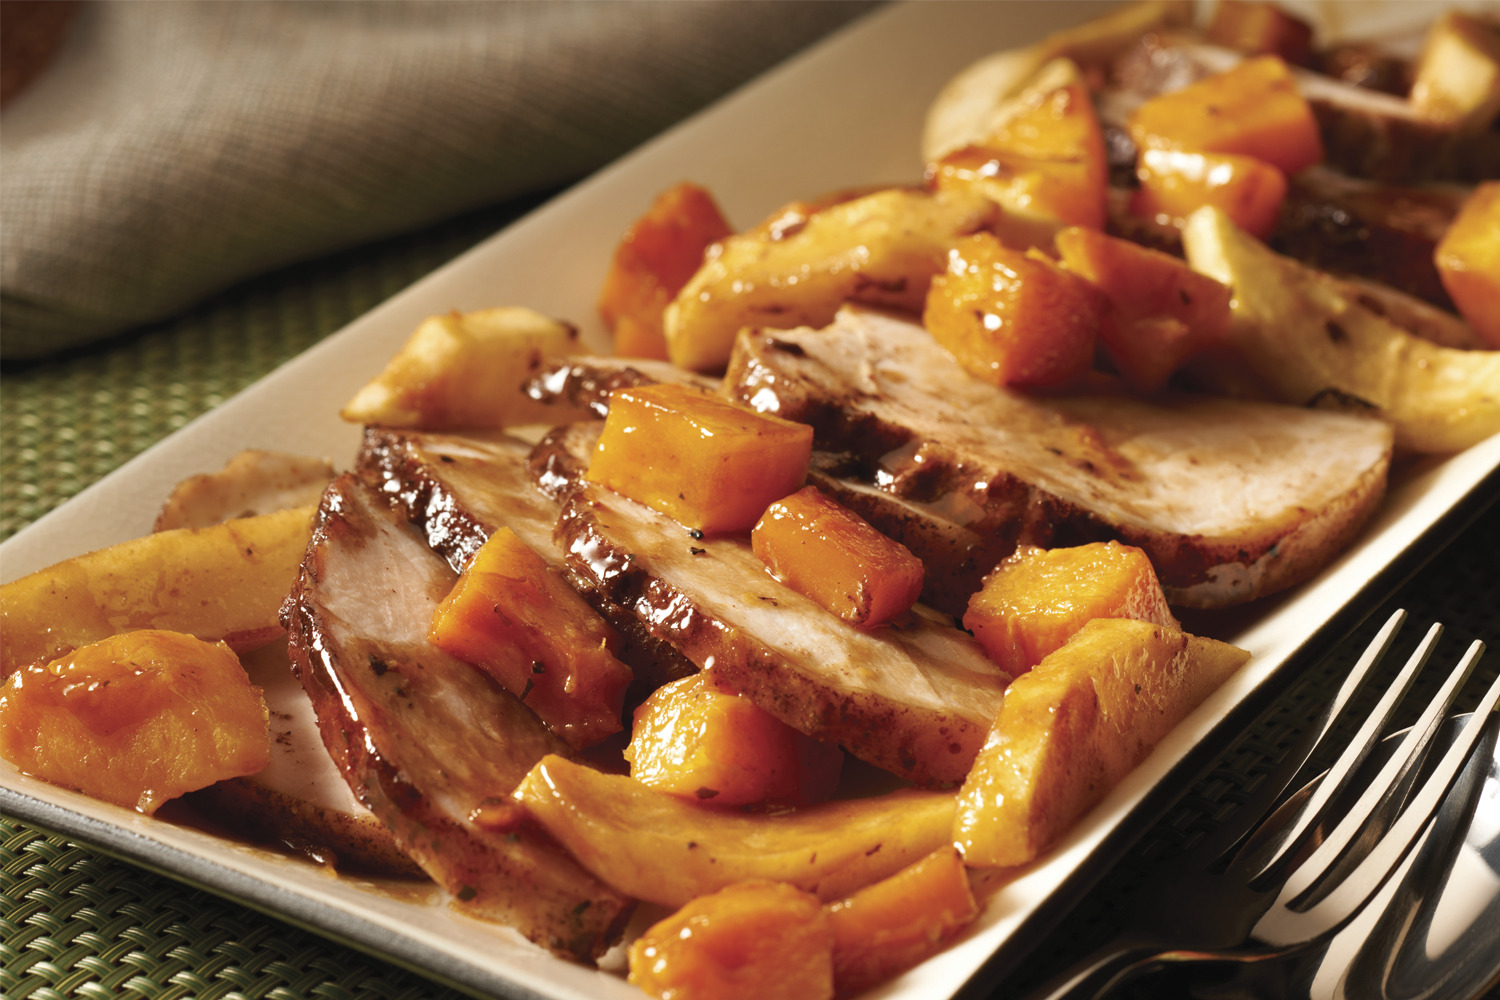 Make-Ahead Spiced Pork & Apple Roast